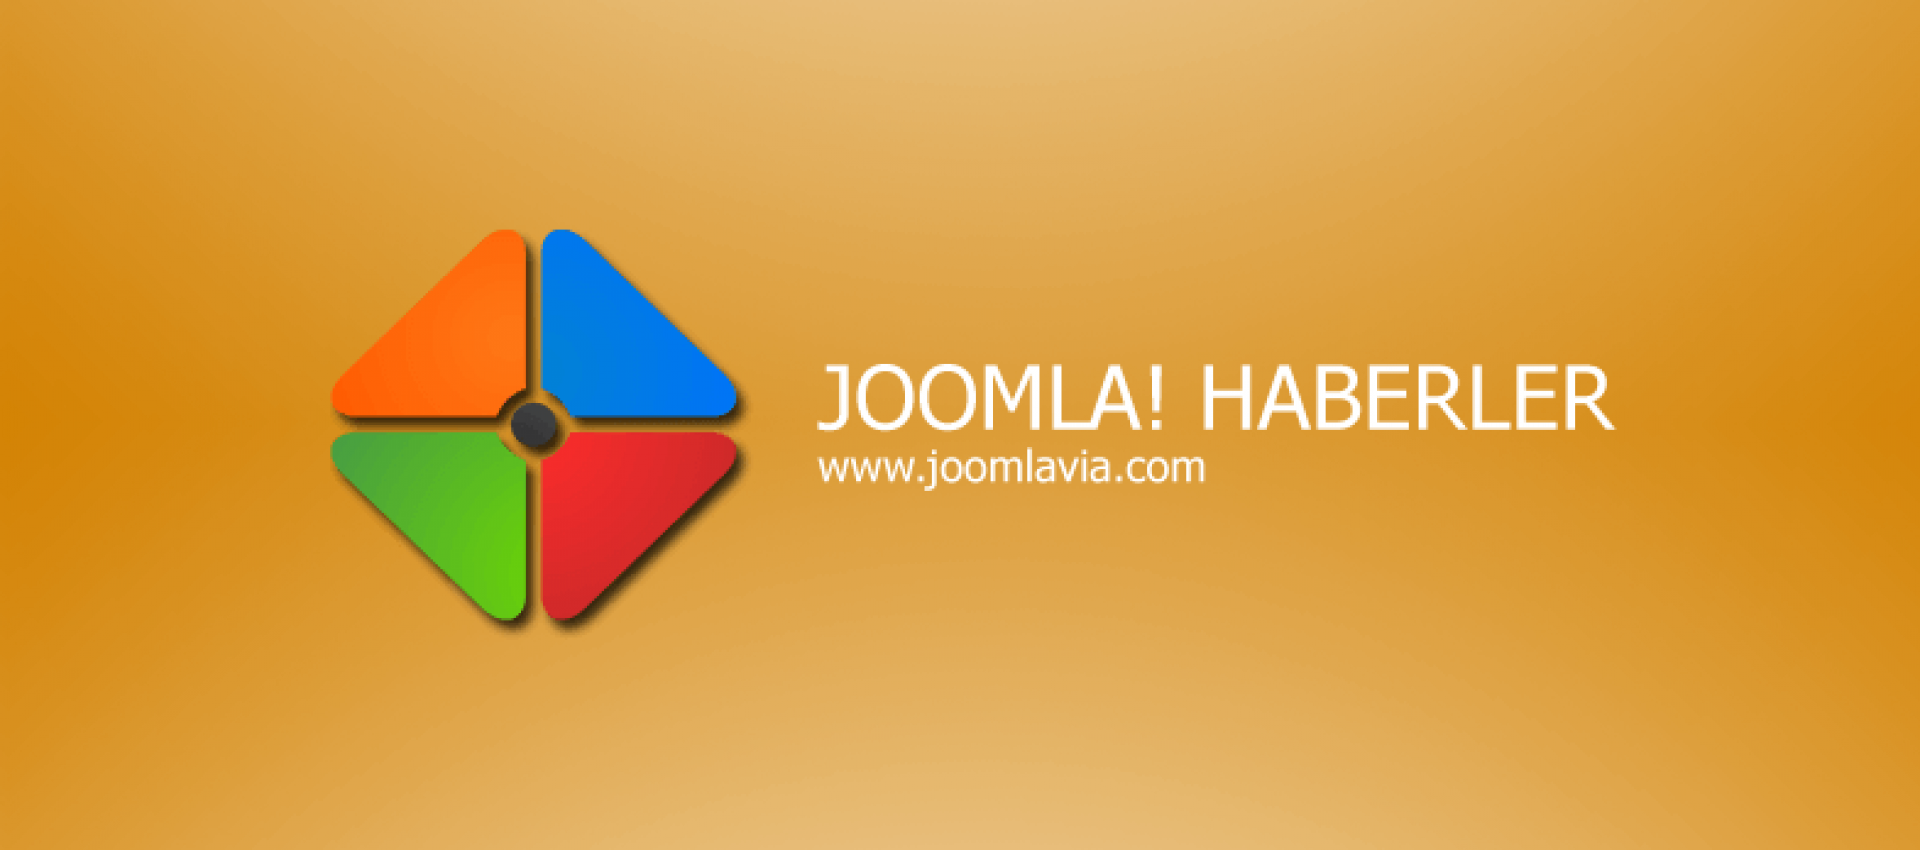 Joomla! 3 Webden Kur Özelliği Nedir?